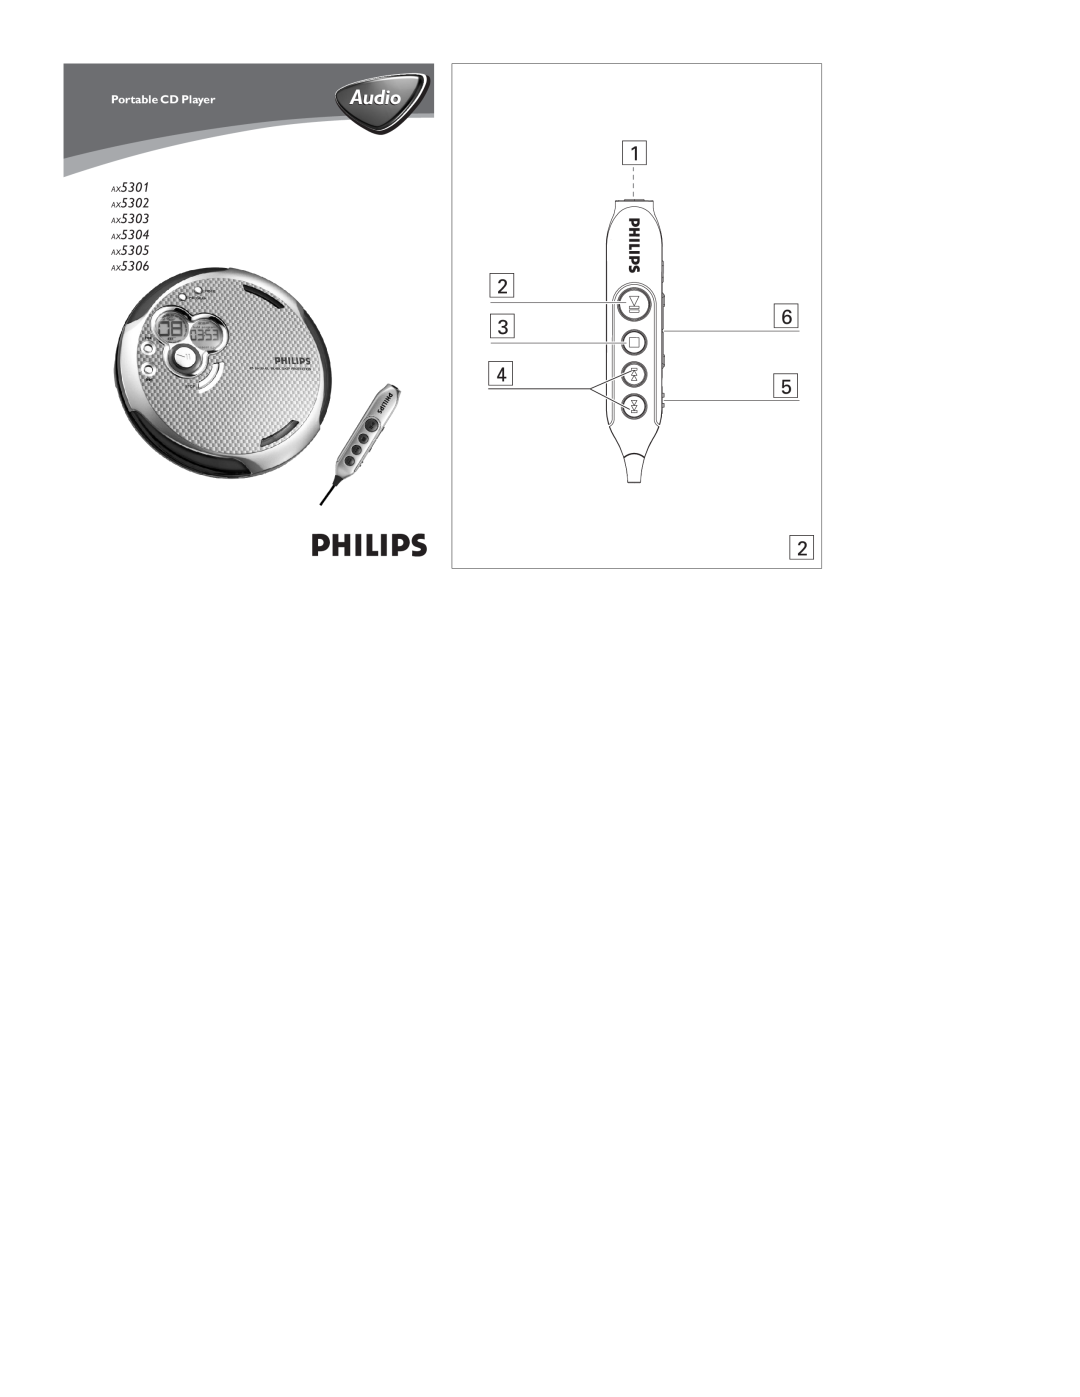 Philips manual Audio, AX5301 AX5302 AX5303 AX5304 AX5305 AX5306, Portable CD Player 